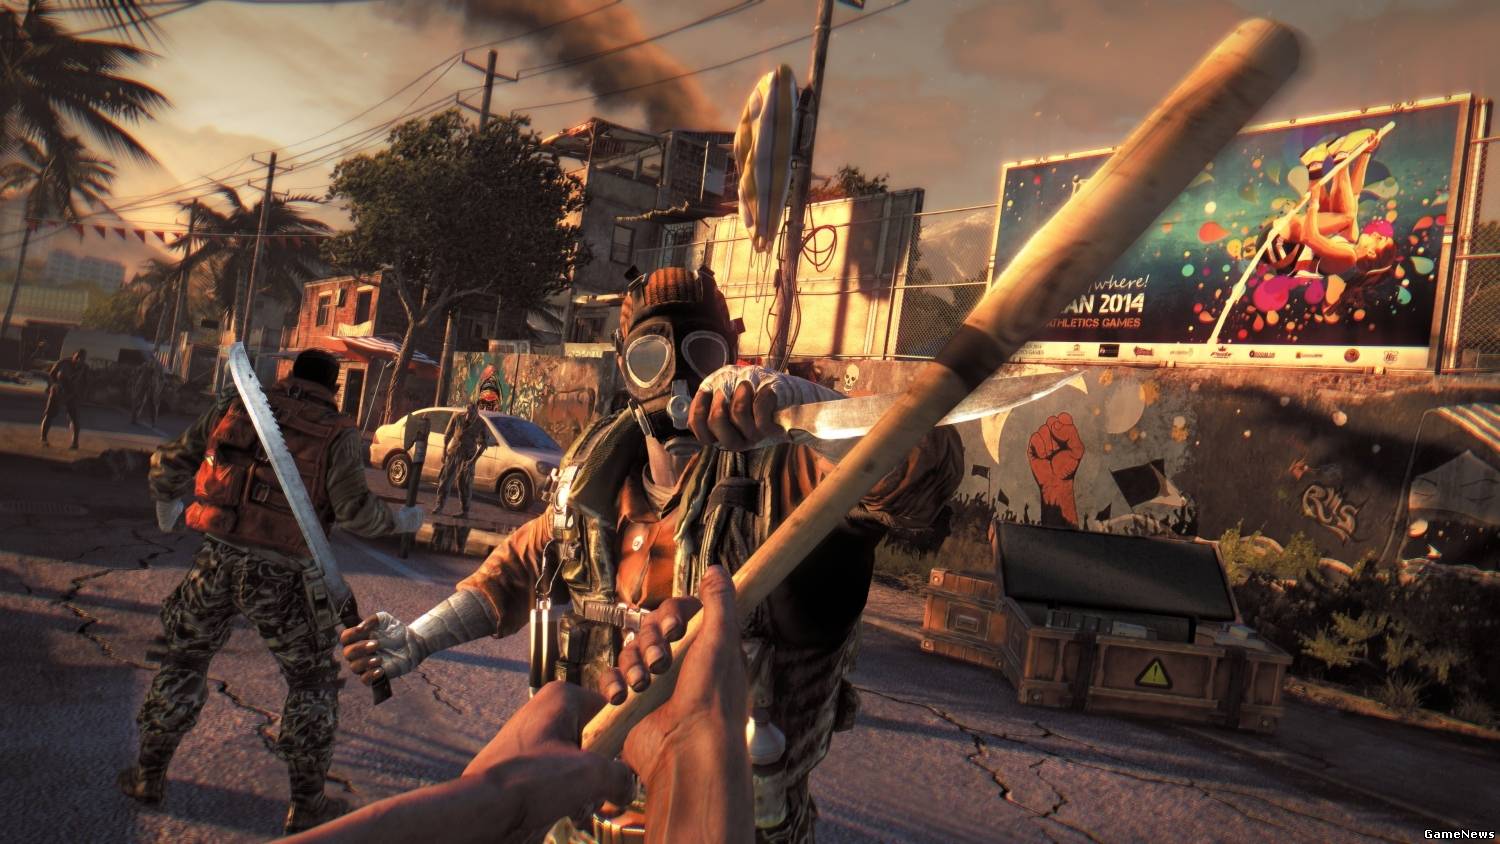 Игра Dying Light обзавелась свежим геймплейным видео